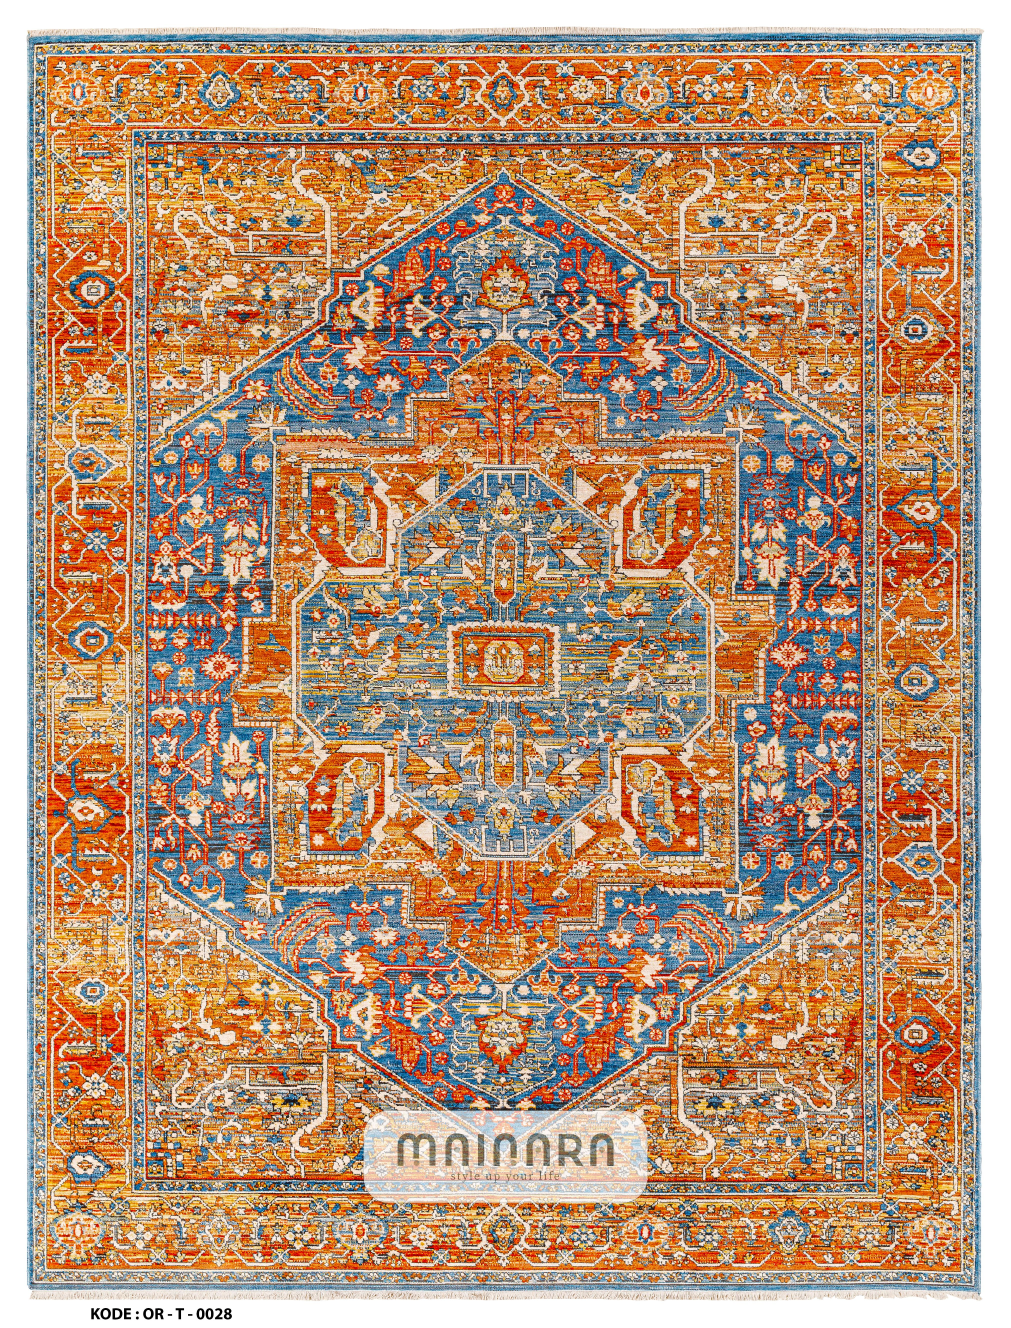 Karpet Tradisional (OR-T-0028) - Orange,Blue